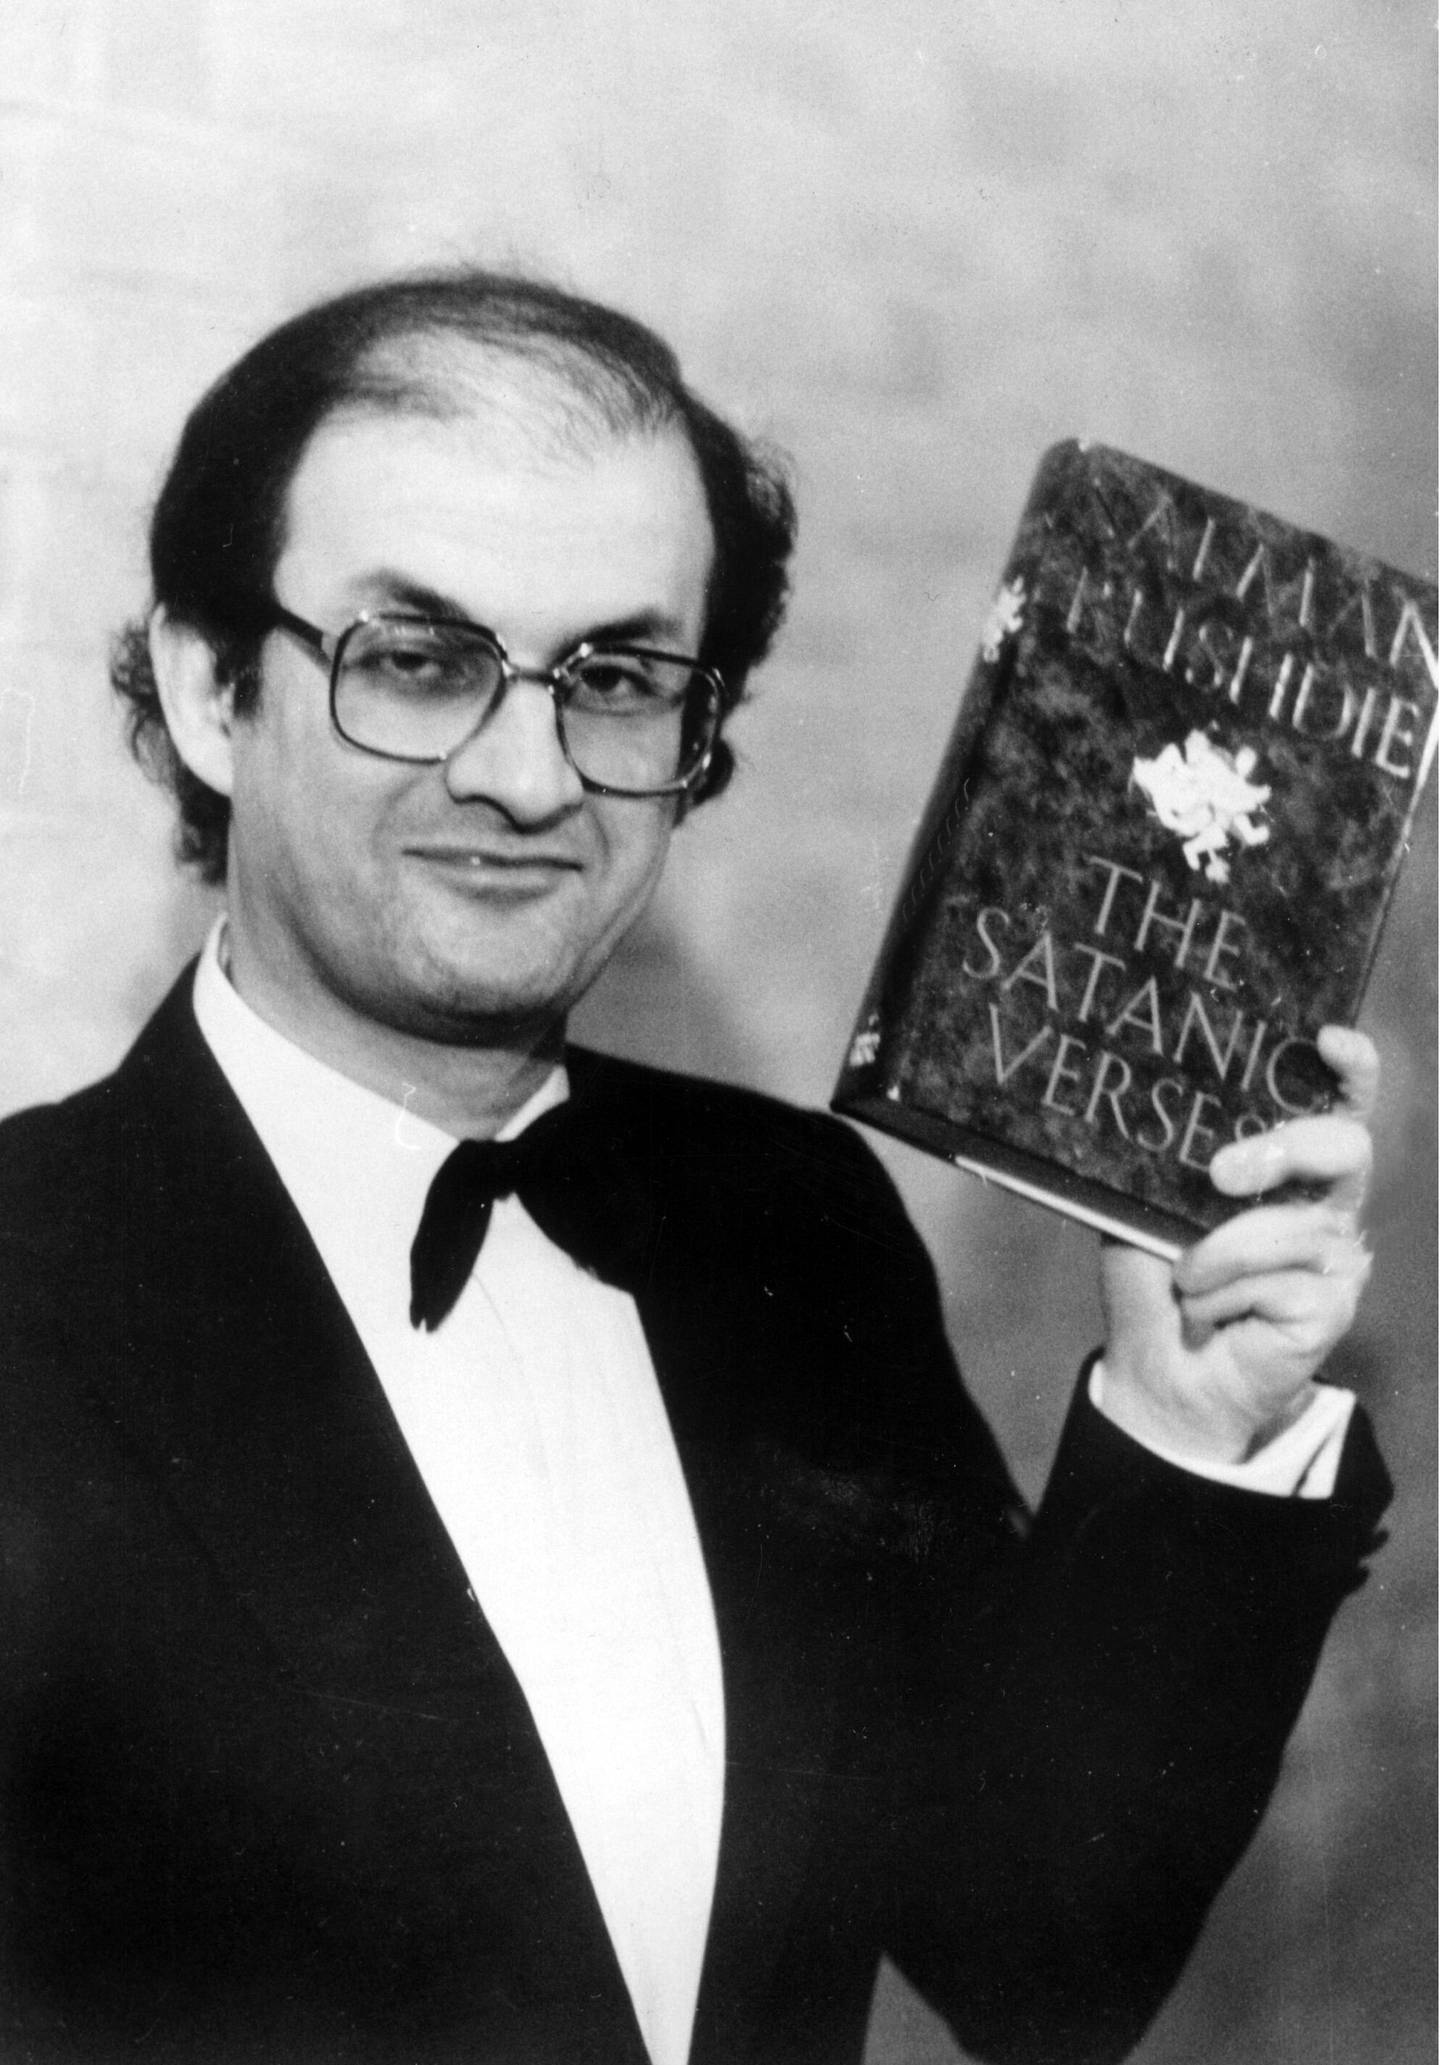 16 februar 1989.  Den iranske forfatteren Salman Rushdie med sin bok "Sataniske vers". Utgivelsen av denne medvirket til at han fikk dødsdom (Fatwah) av Ayatollah Khomeiny.
Arkivfoto/SCANPIX /Solo

------------